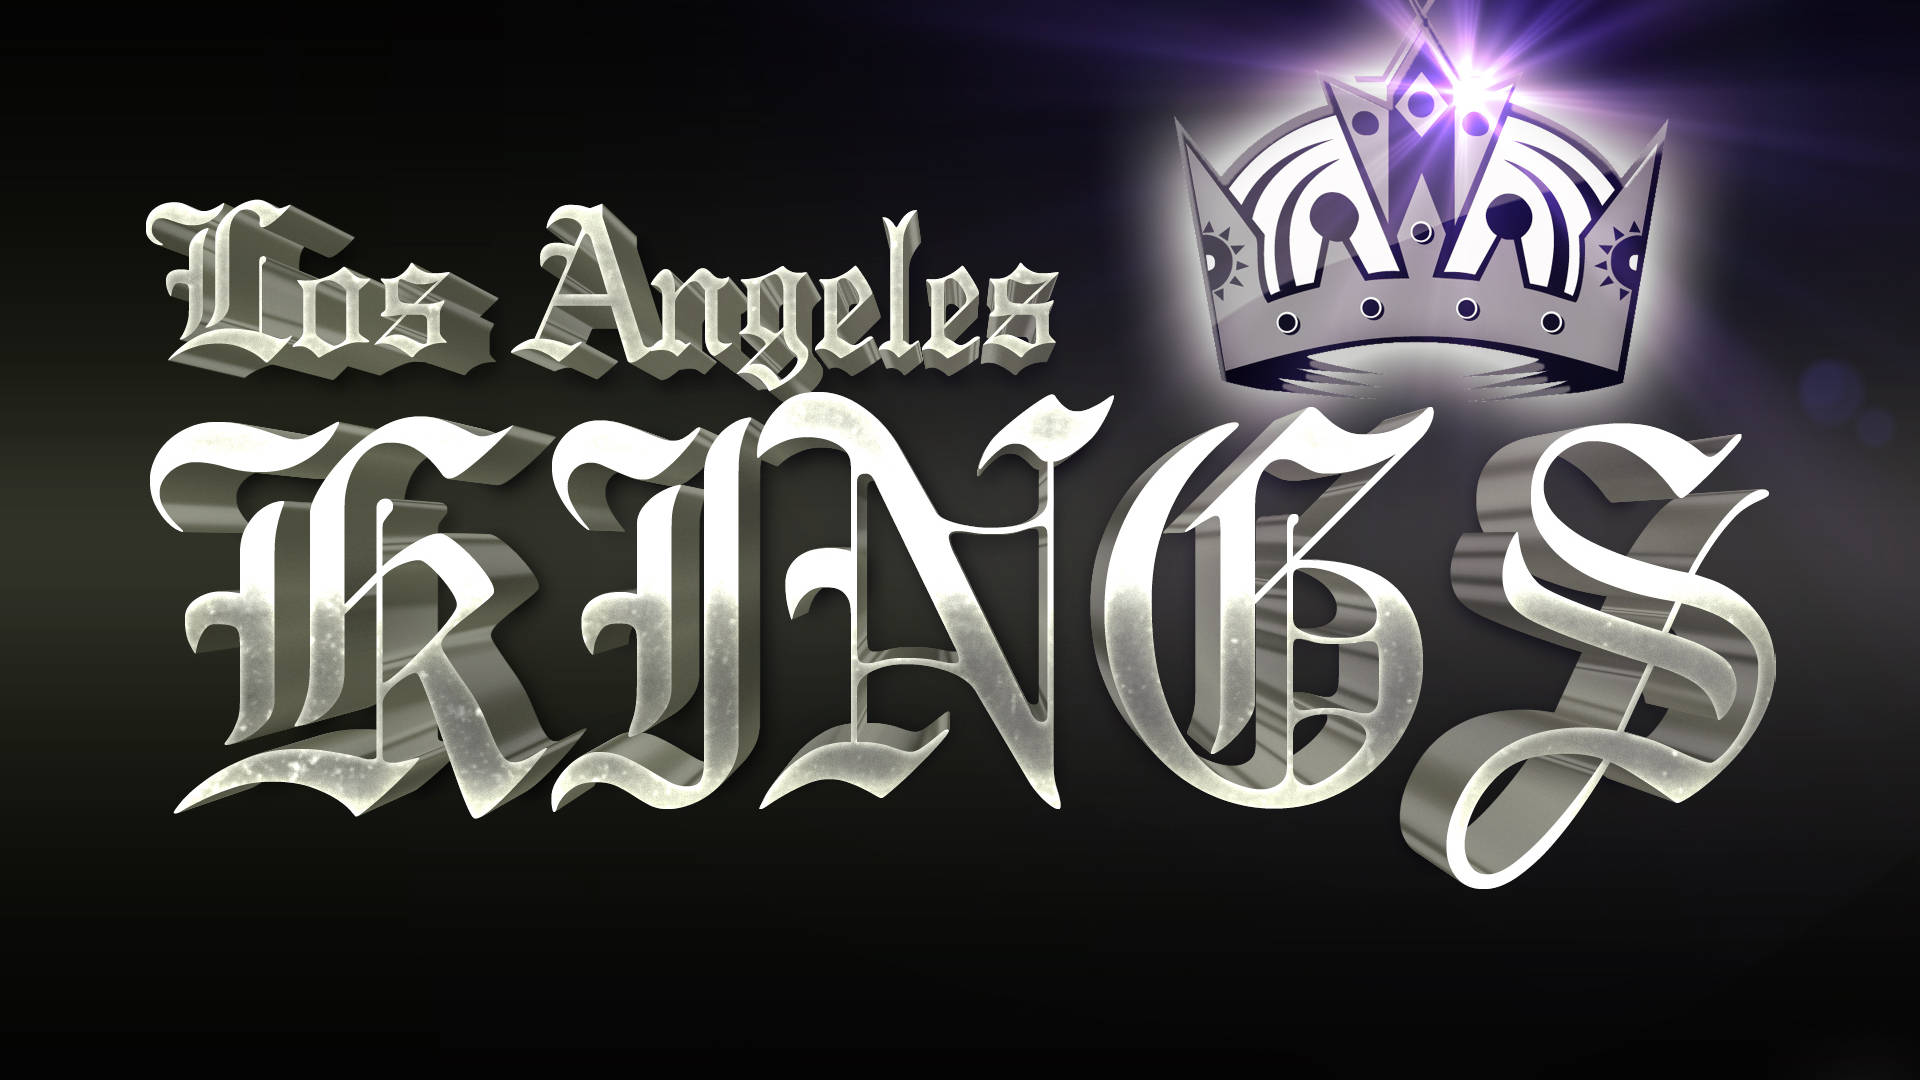 Artenegro De Los Angeles Kings Fondo de pantalla